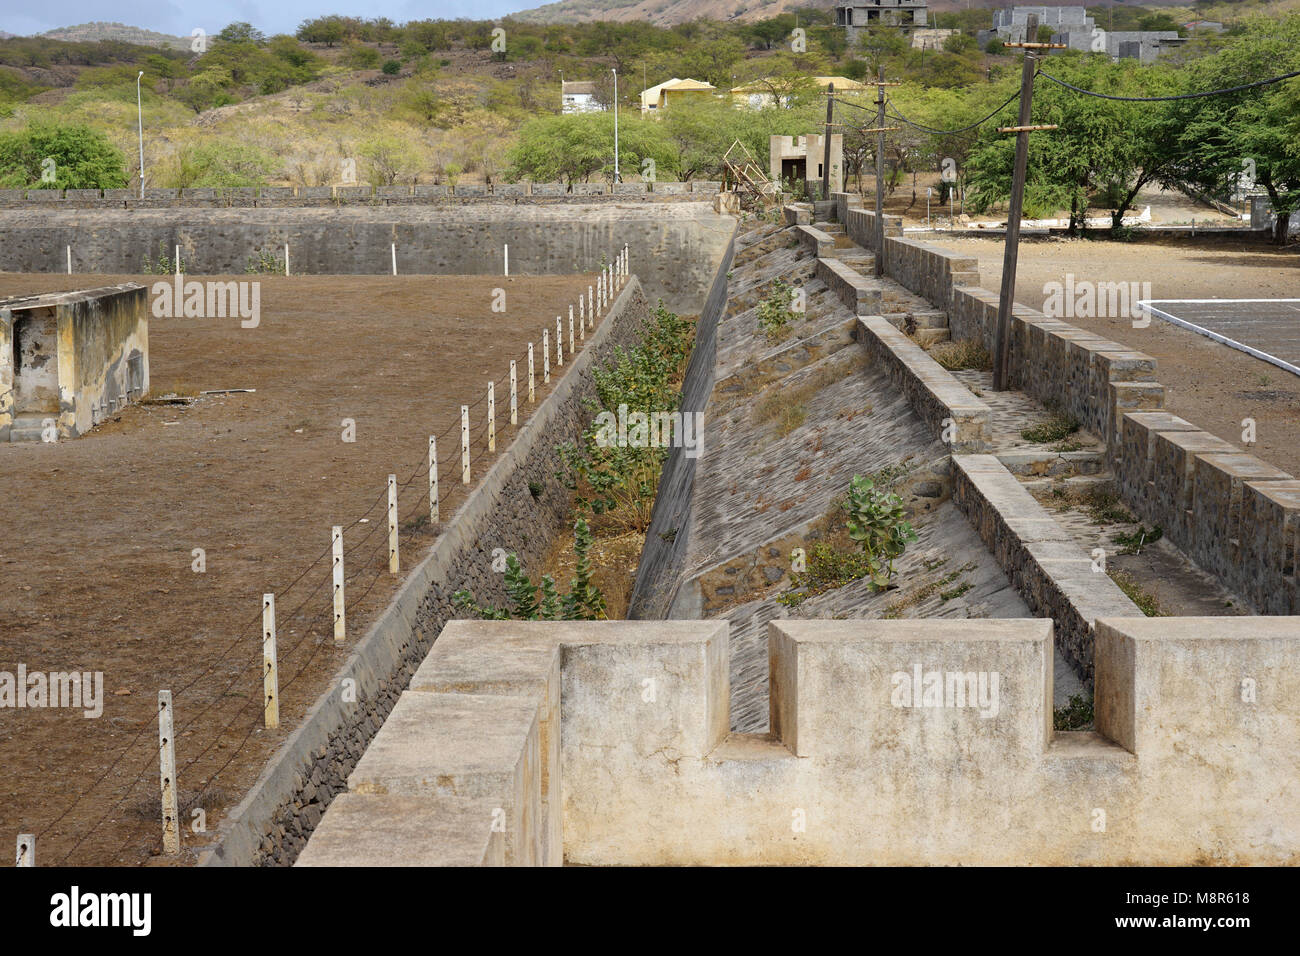 Murs de périmètre autour du camp, le Museu do Tarrafal, Camp de Tarrafal, Tarrafal, l'île de Santiago, Cap-Vert, Afrique Banque D'Images